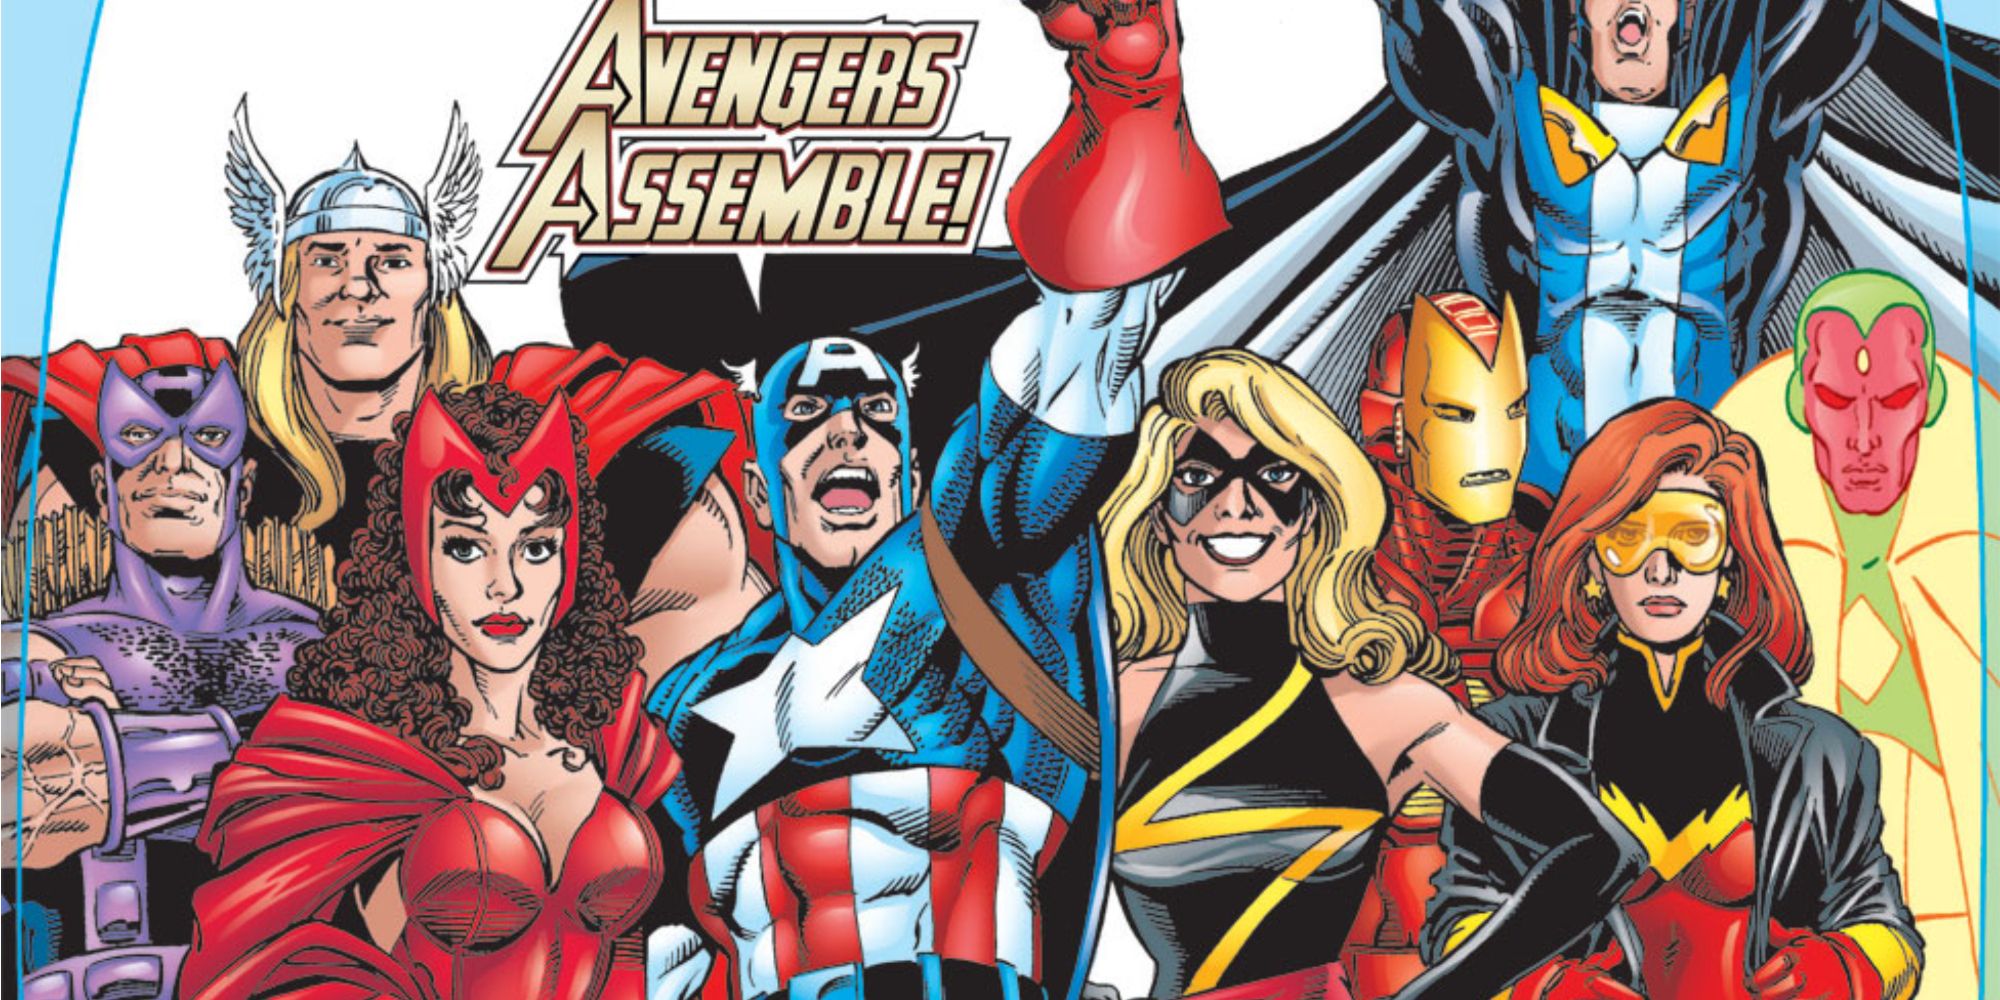 Firestar joins the Avengers in Marvel Comics.